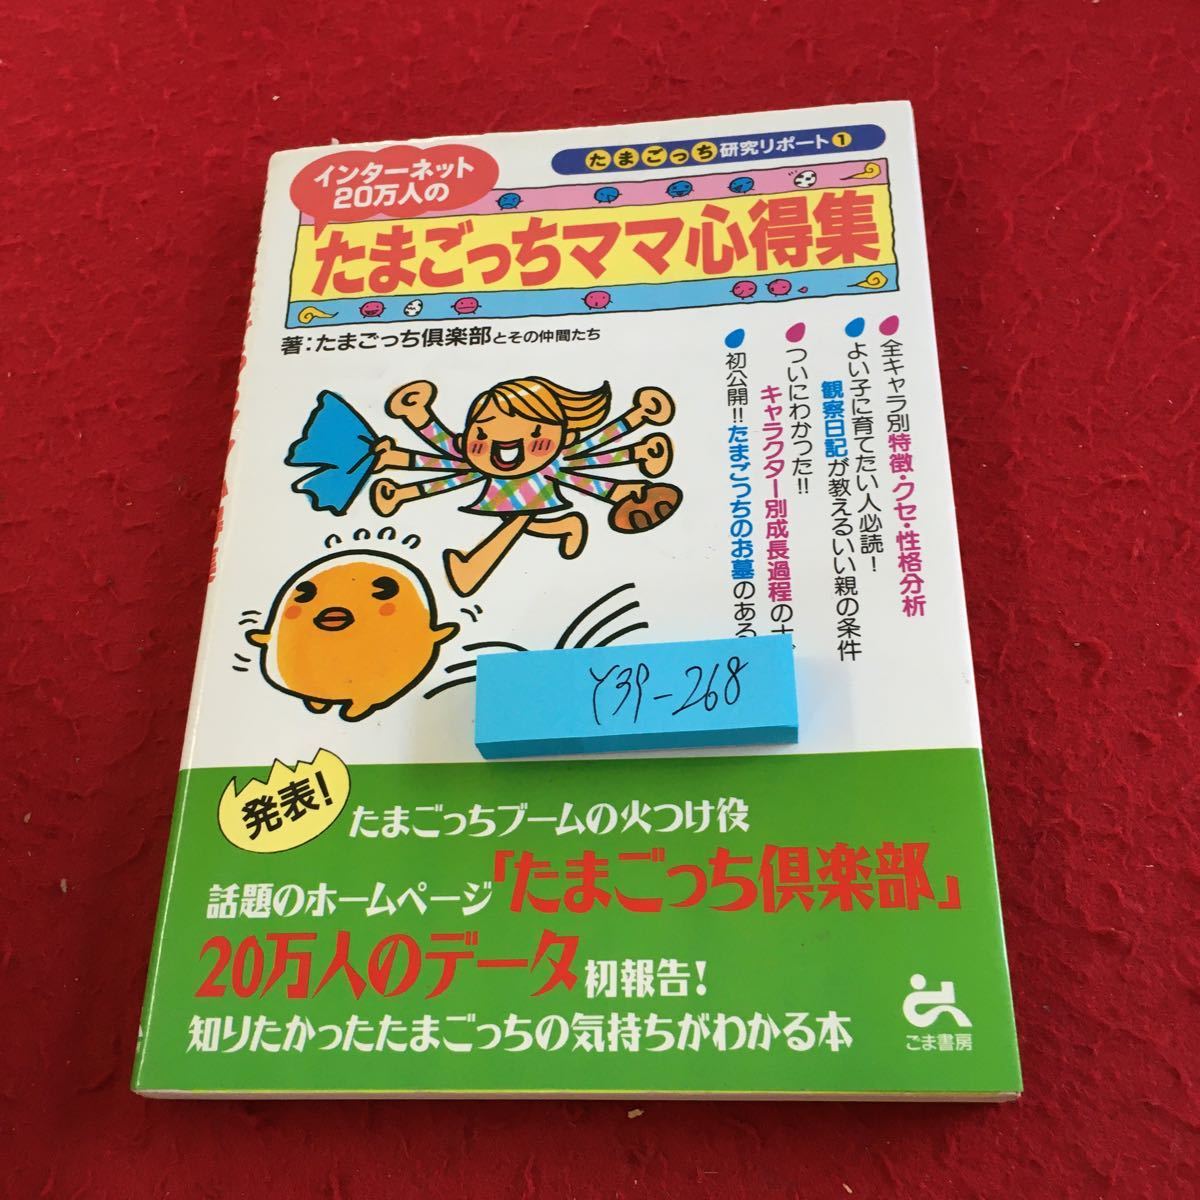 Y39-268 200 000 Интернет Tamagotchi Mama Kazu Tamagotchi Report ① Введение персонажа и т. Д.